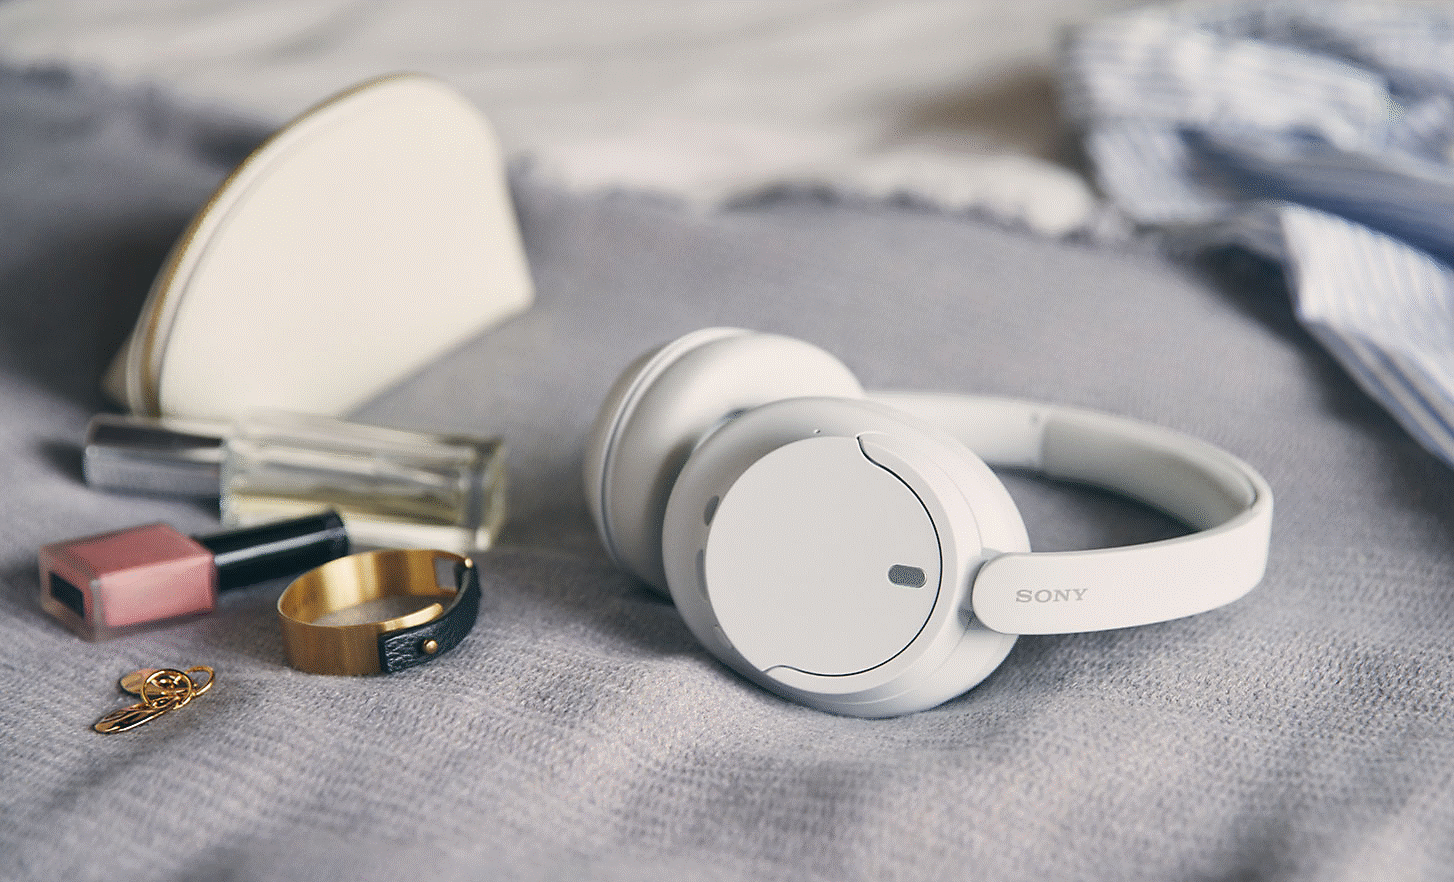 Εικόνα λευκών ακουστικών Sony WH-CH720 επάνω σε ένα κρεβάτι με κάποια αξεσουάρ